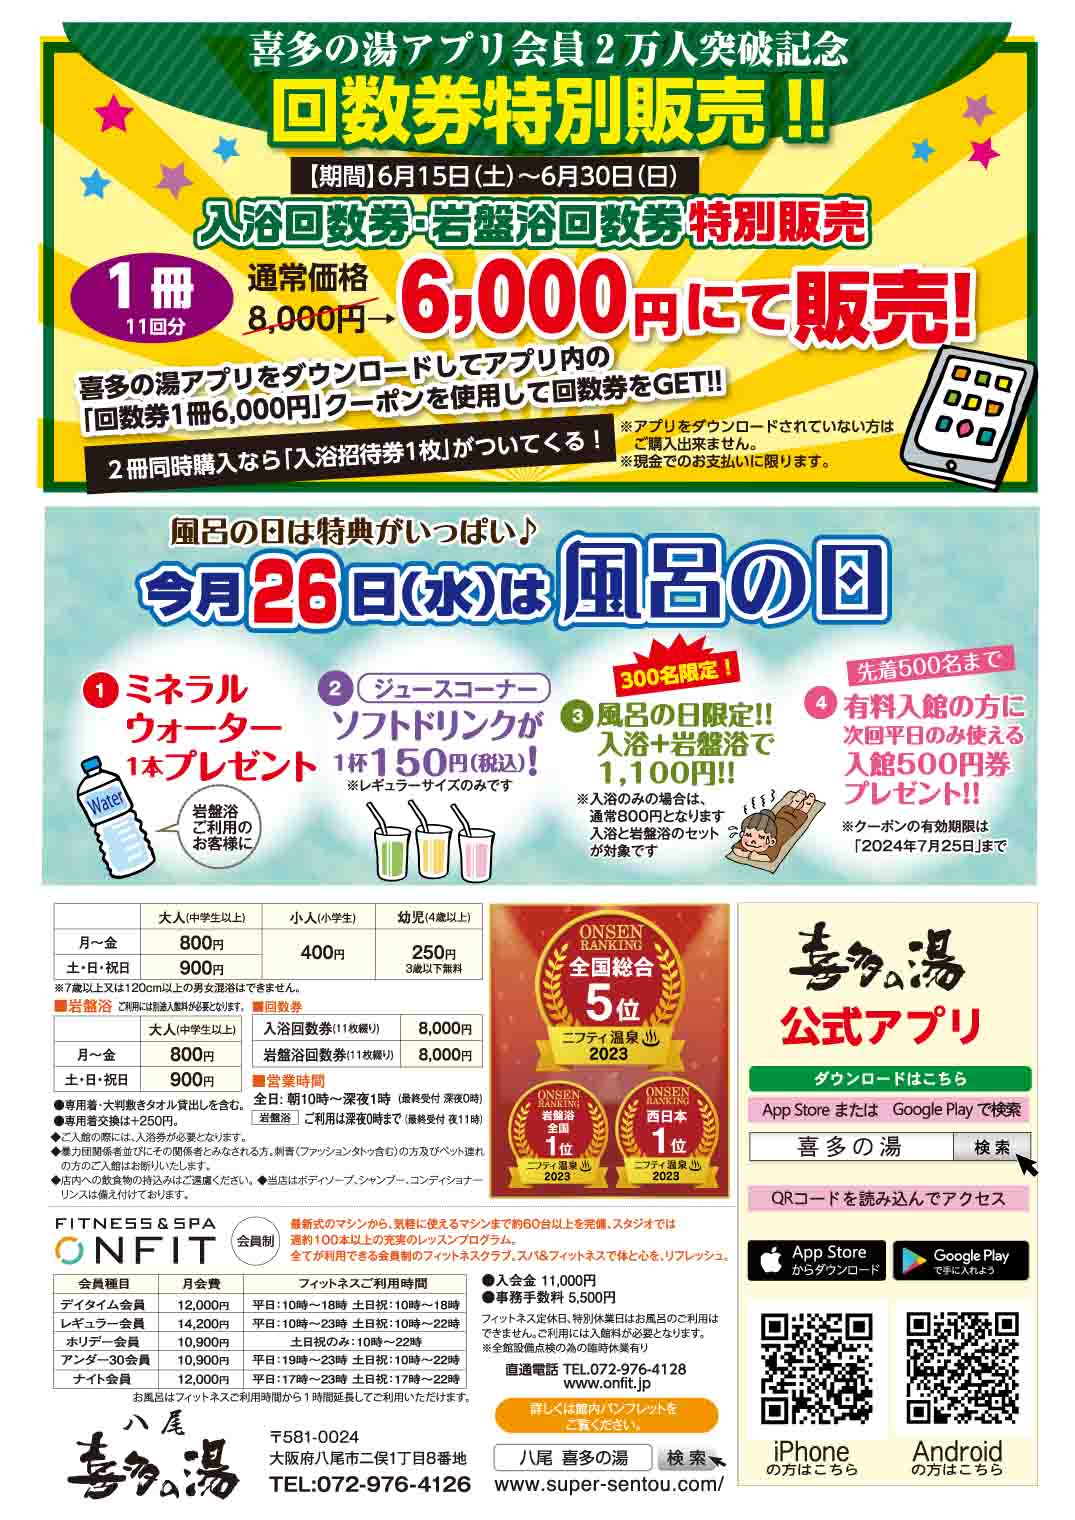 八尾温泉 喜多の湯 イベント情報【6月】 | 喜多の湯